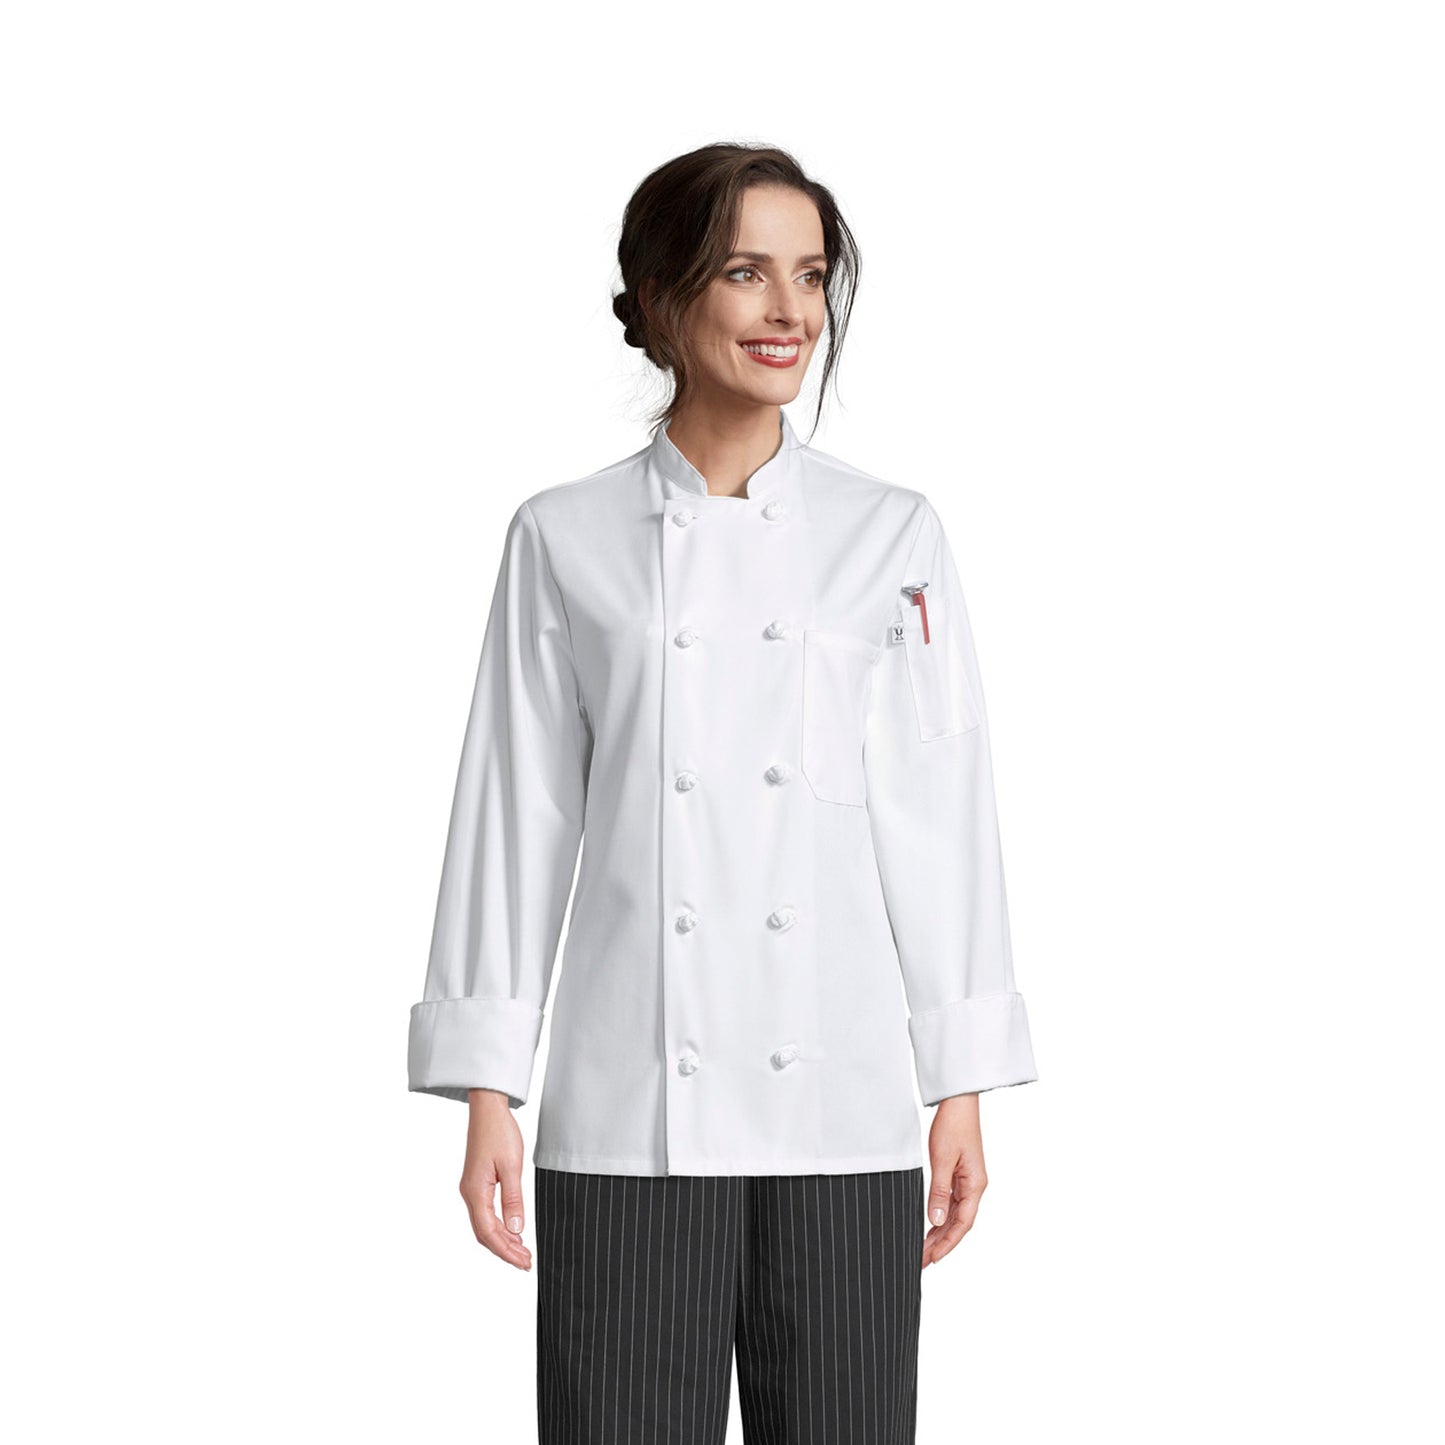 Sedona Women's Chef Coat #0490 *Closeout* (All Sales Final No Returns)